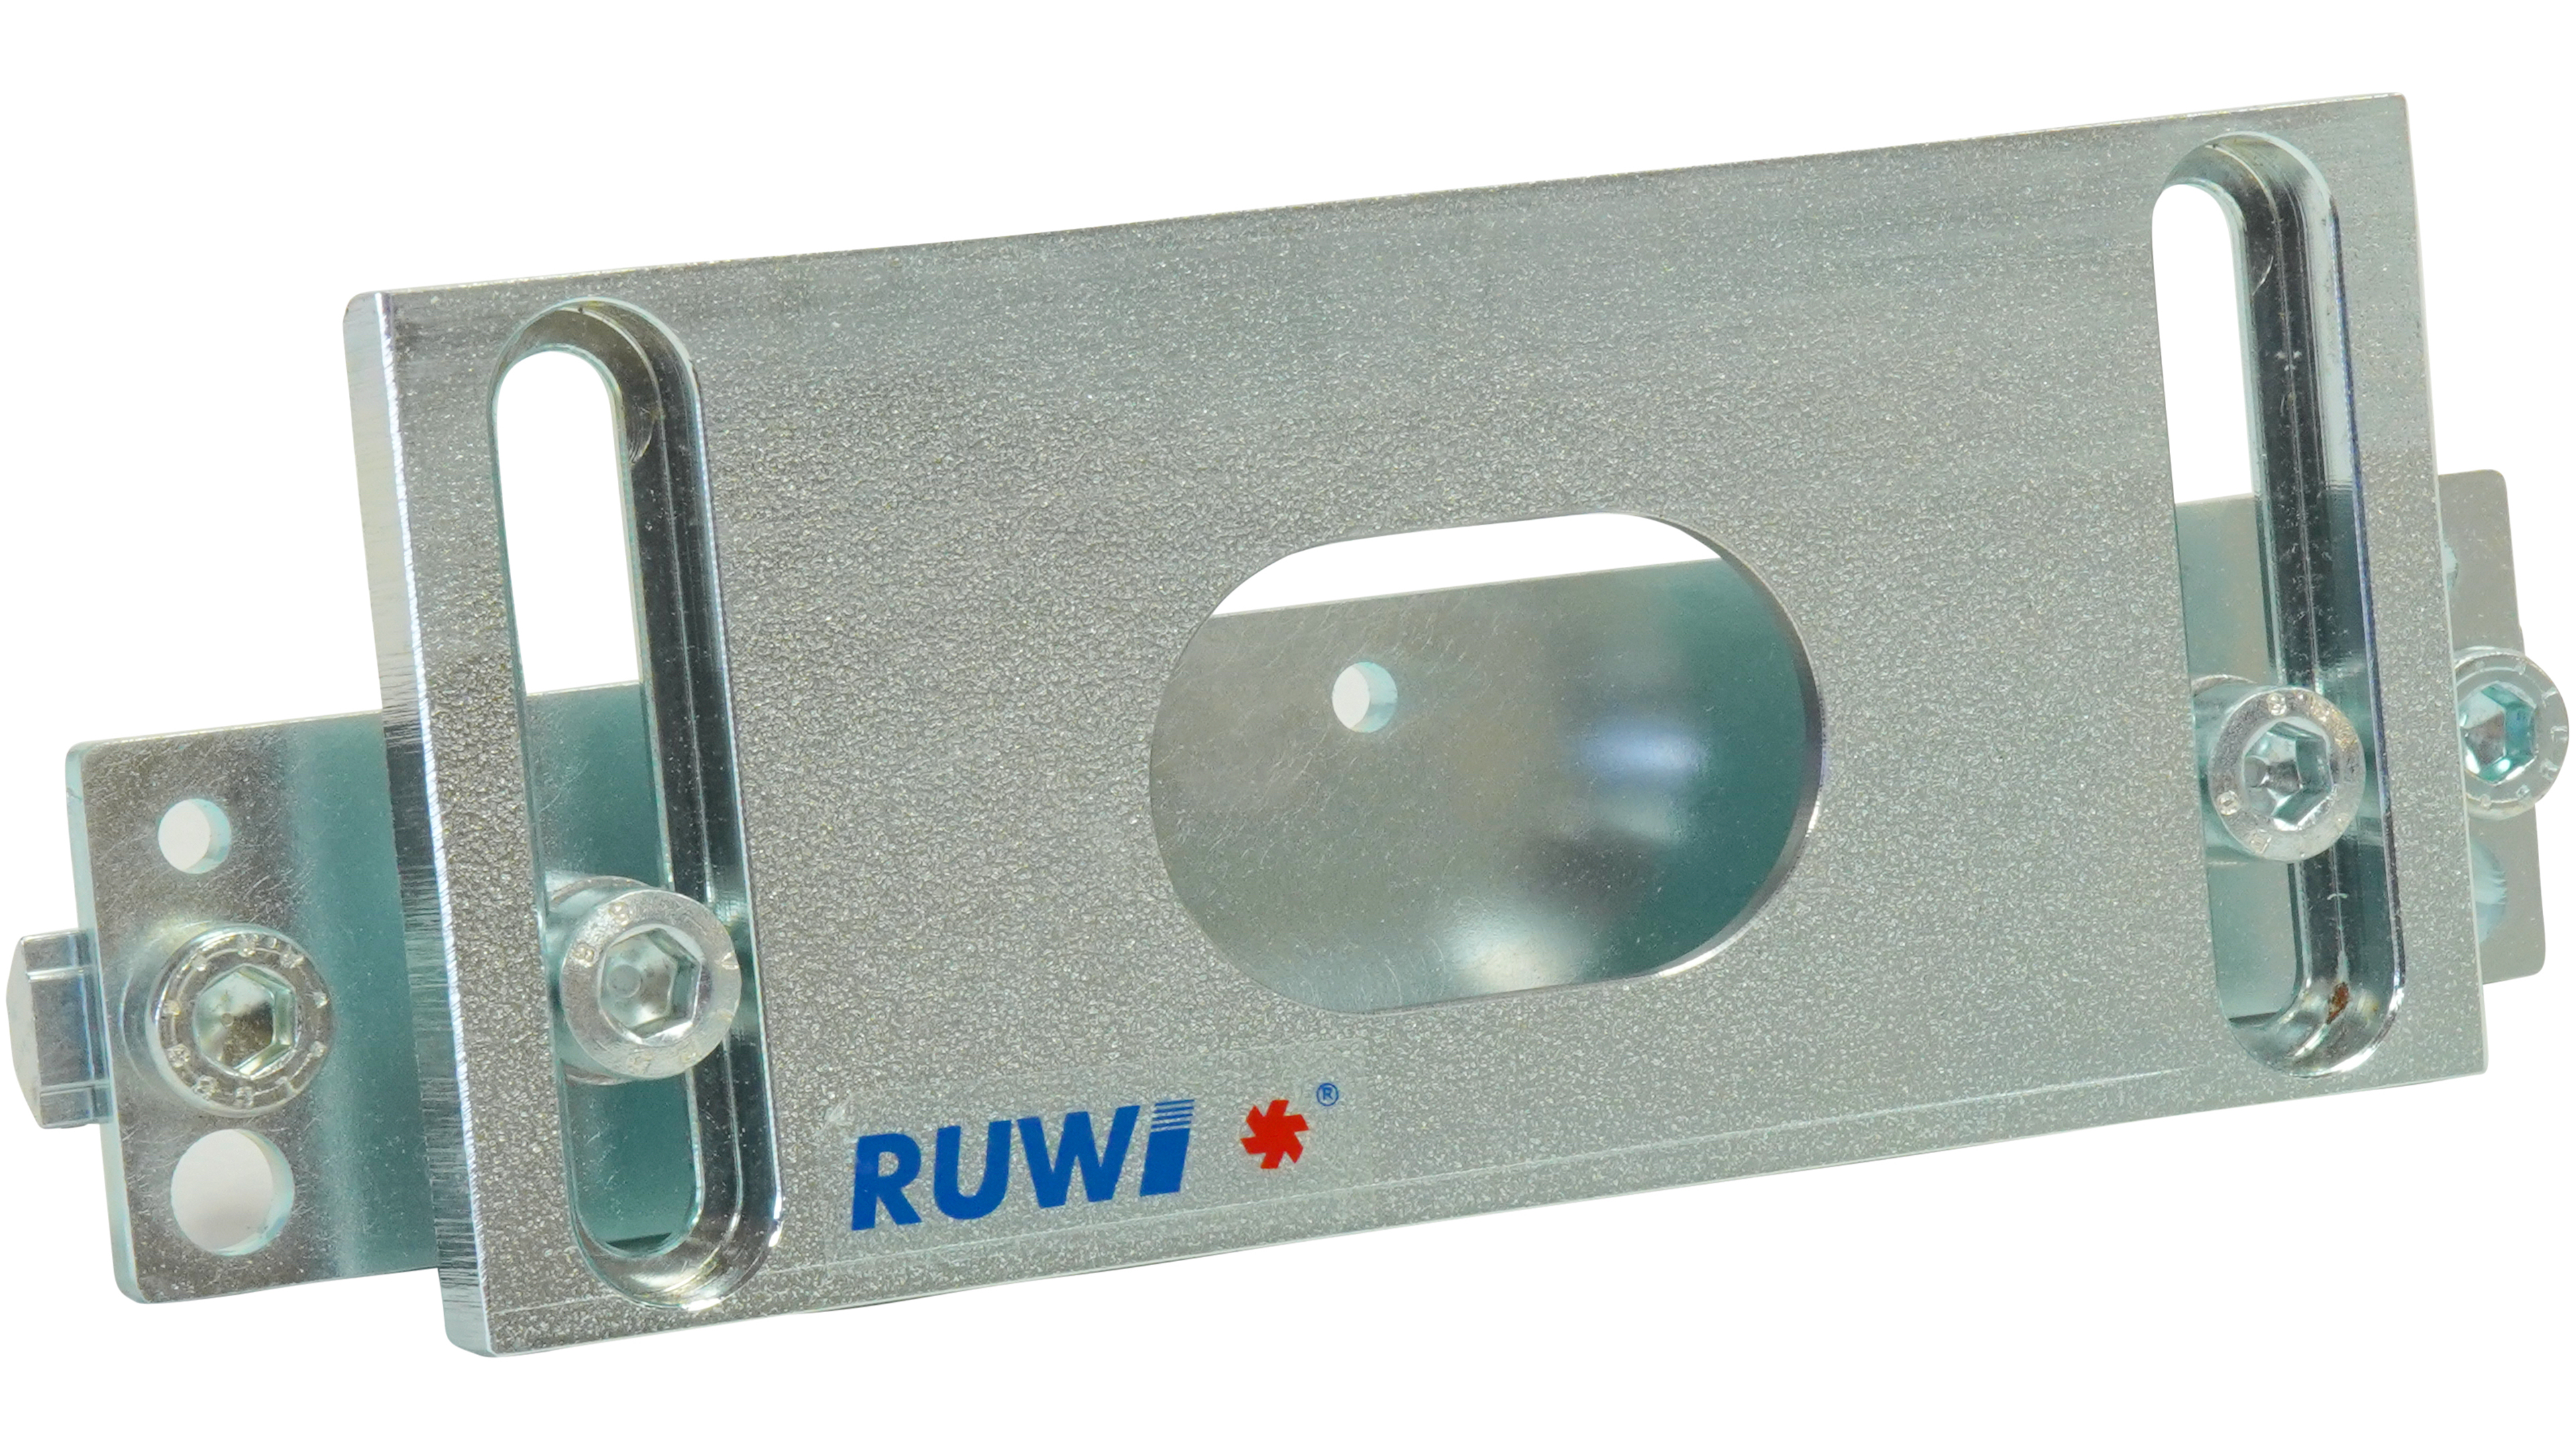 RUWI Multifunktionstisch kaufen - sautershop